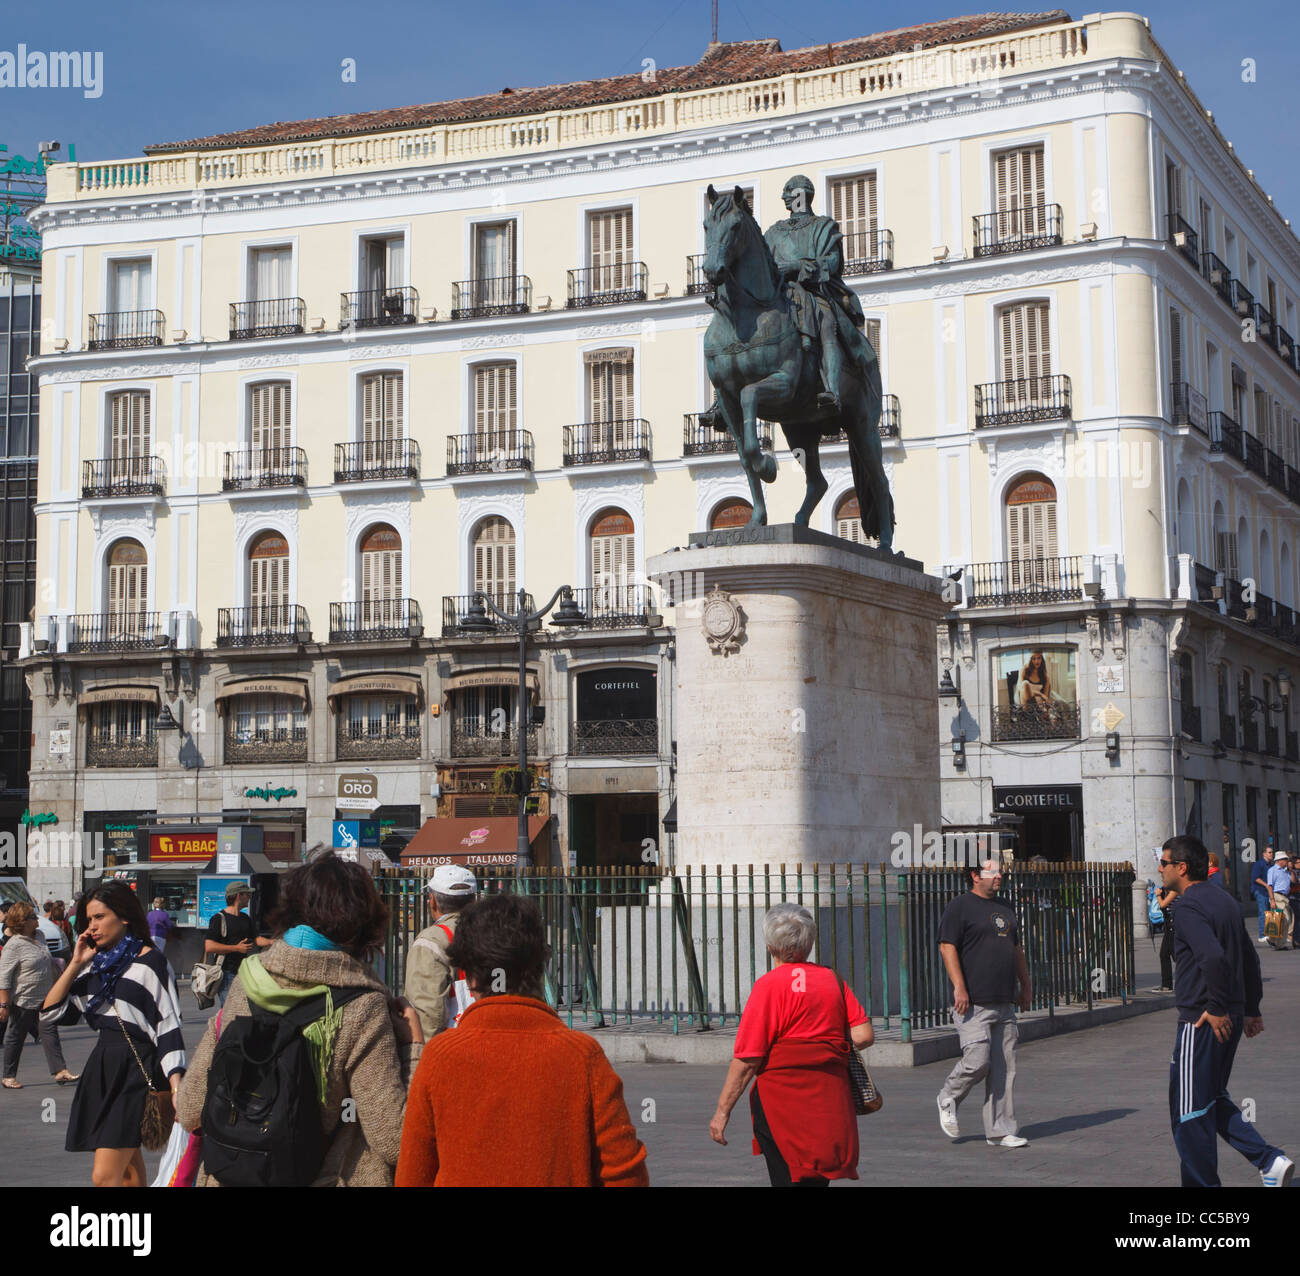 Madrid, Espagne. La Puerta del Sol. Statue équestre du roi Carlos III. Banque D'Images